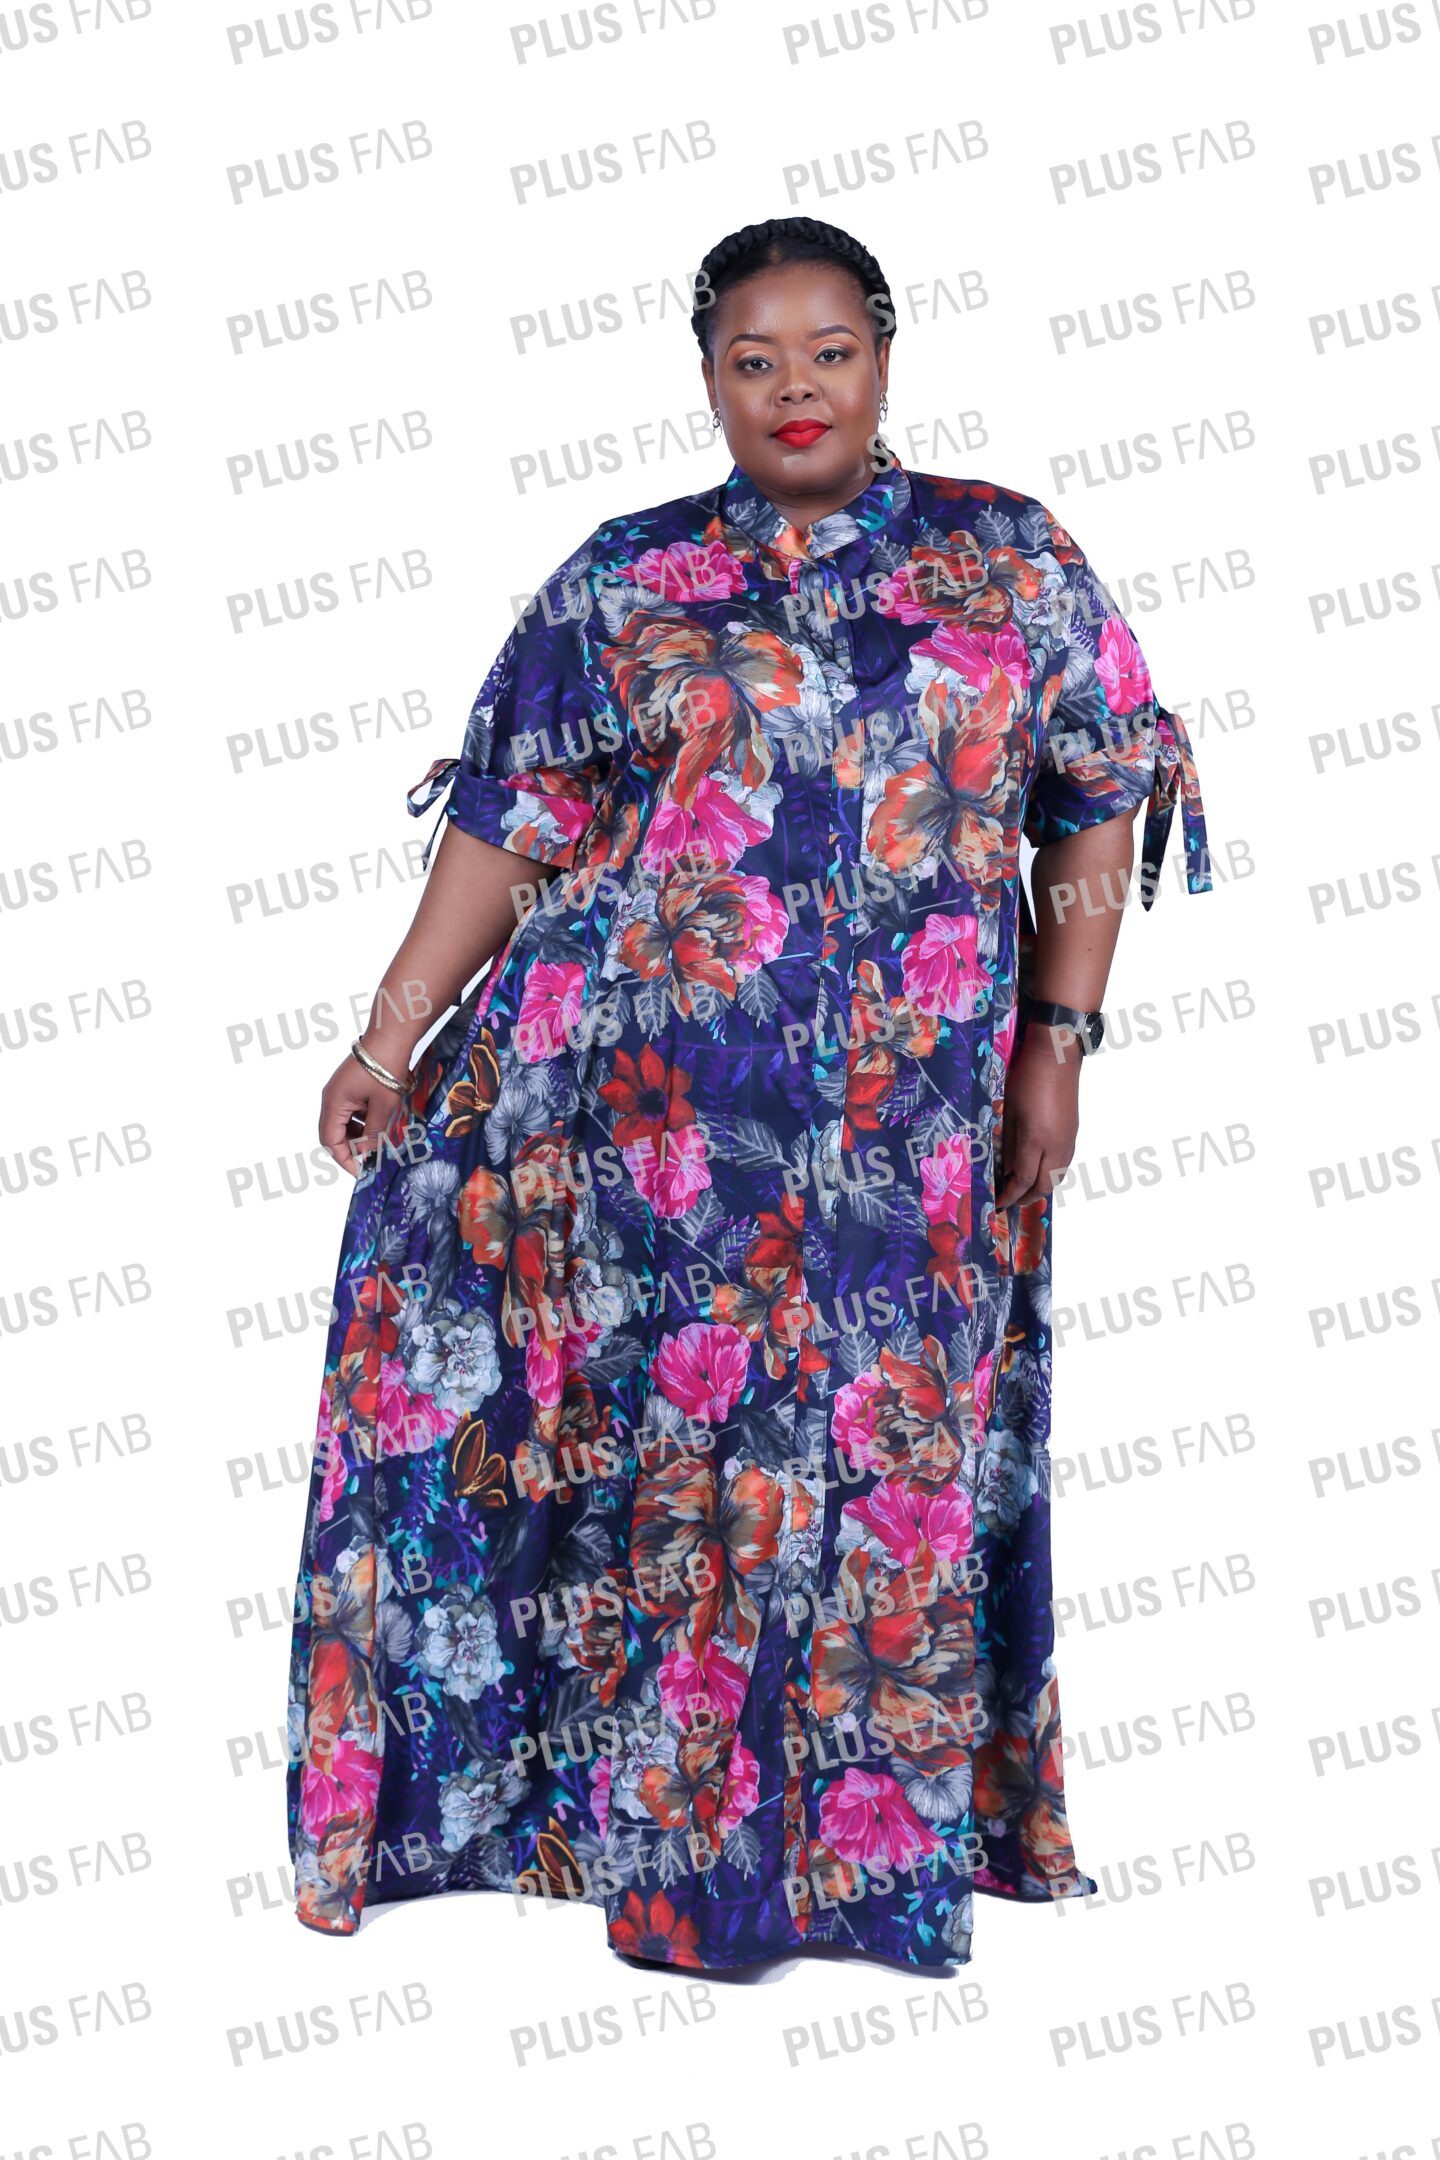 Vuyiswa Dress - plusfab